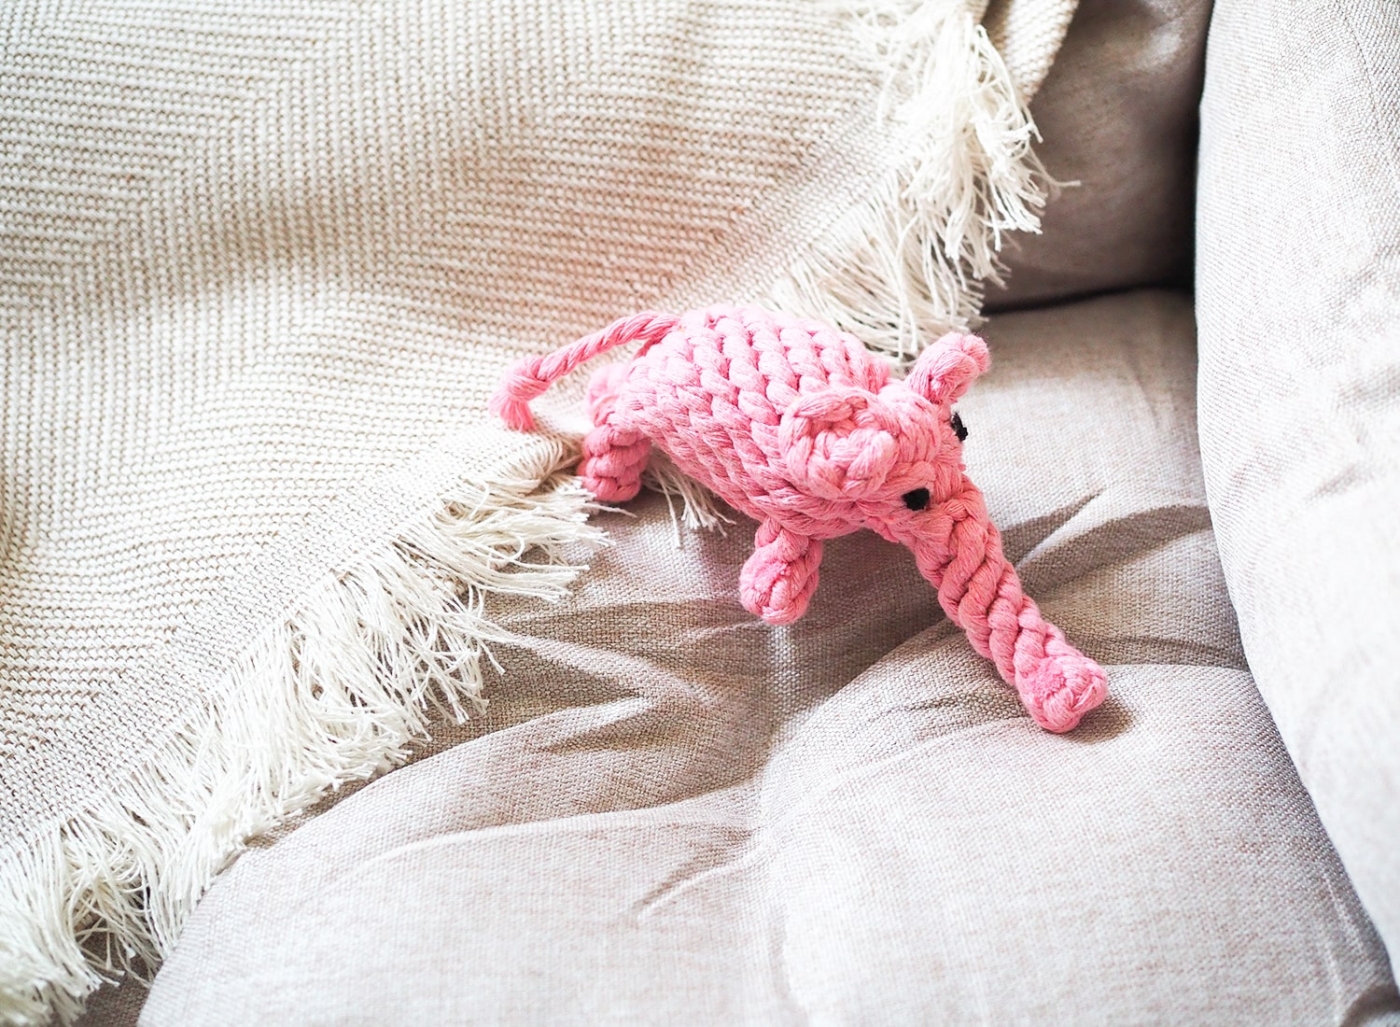 Natürliches Hundespielzeug aus Baumwollseil zum Reiniger der Zähne des Hundes - rosa Elefant Elsa.